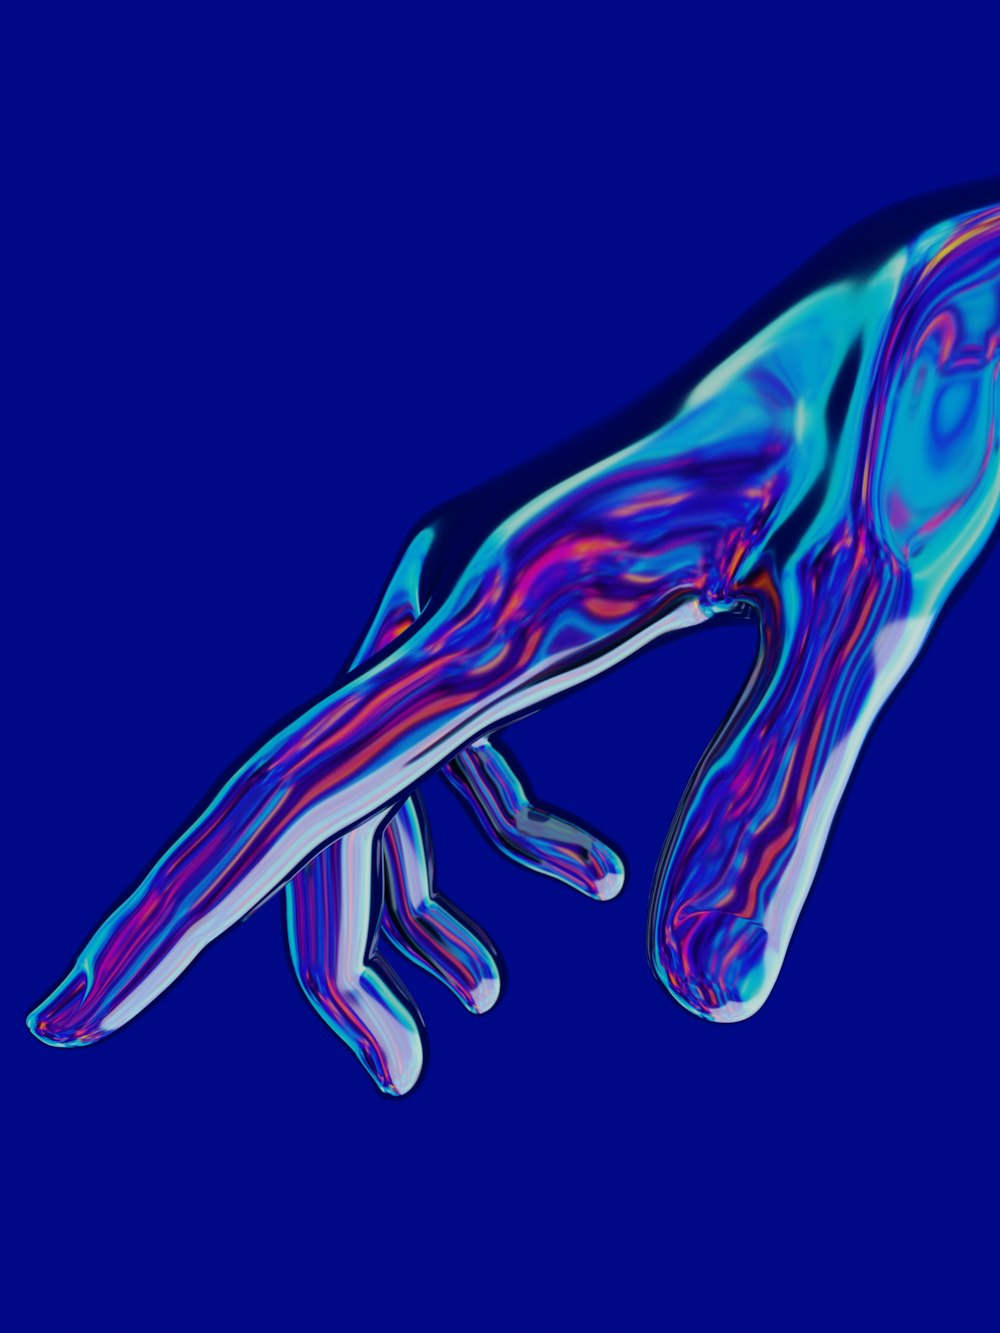 Una imagen azul y púrpura de la mano de una persona